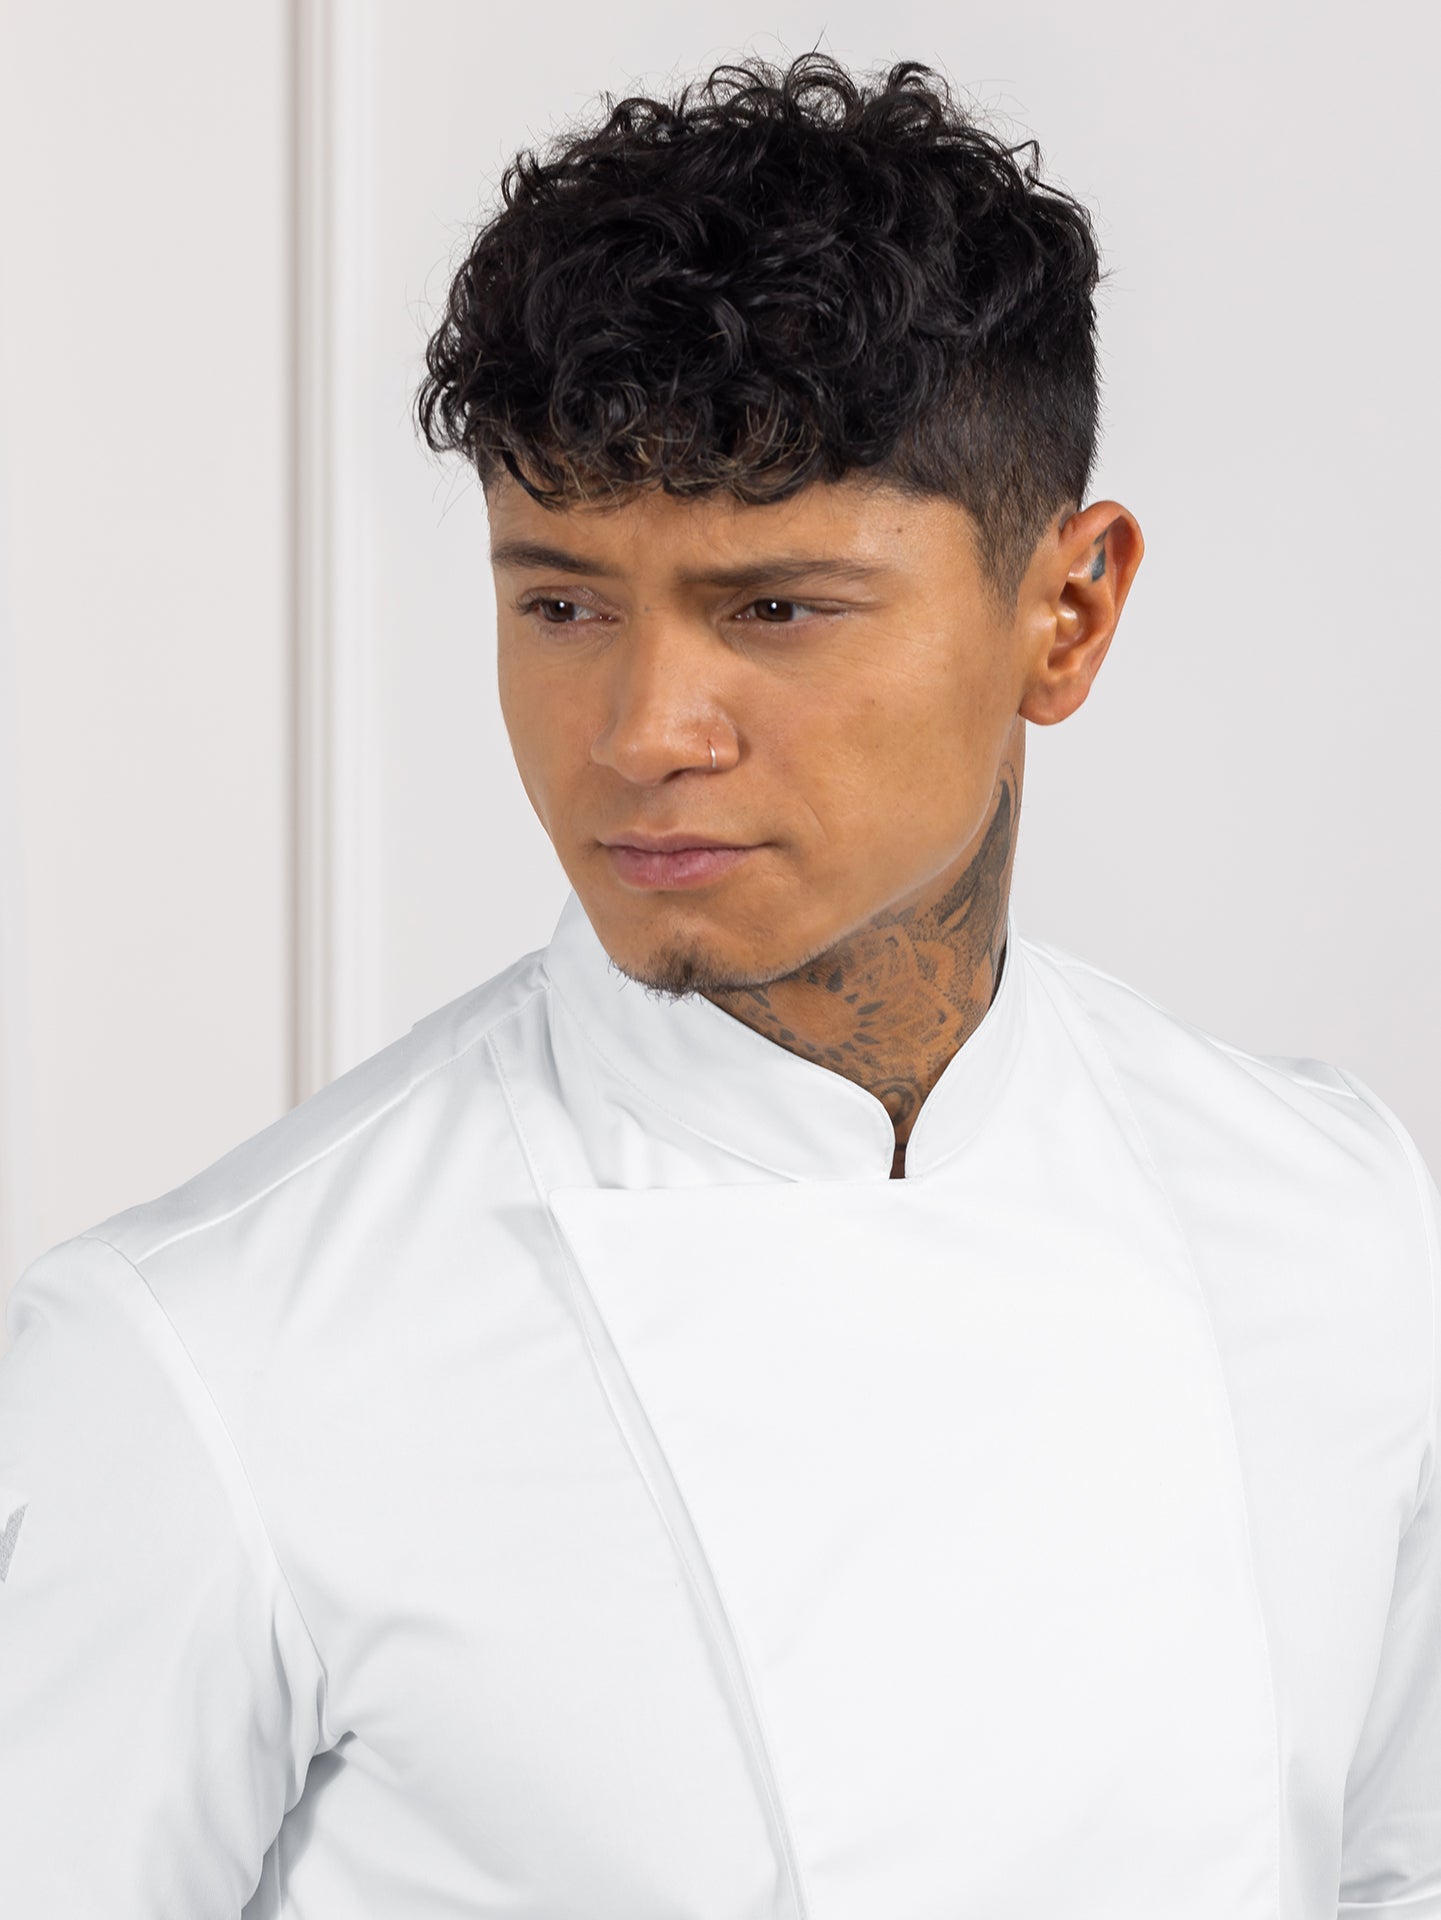 Chef Jacket Melvin White by Le Nouveau Chef -  ChefsCotton